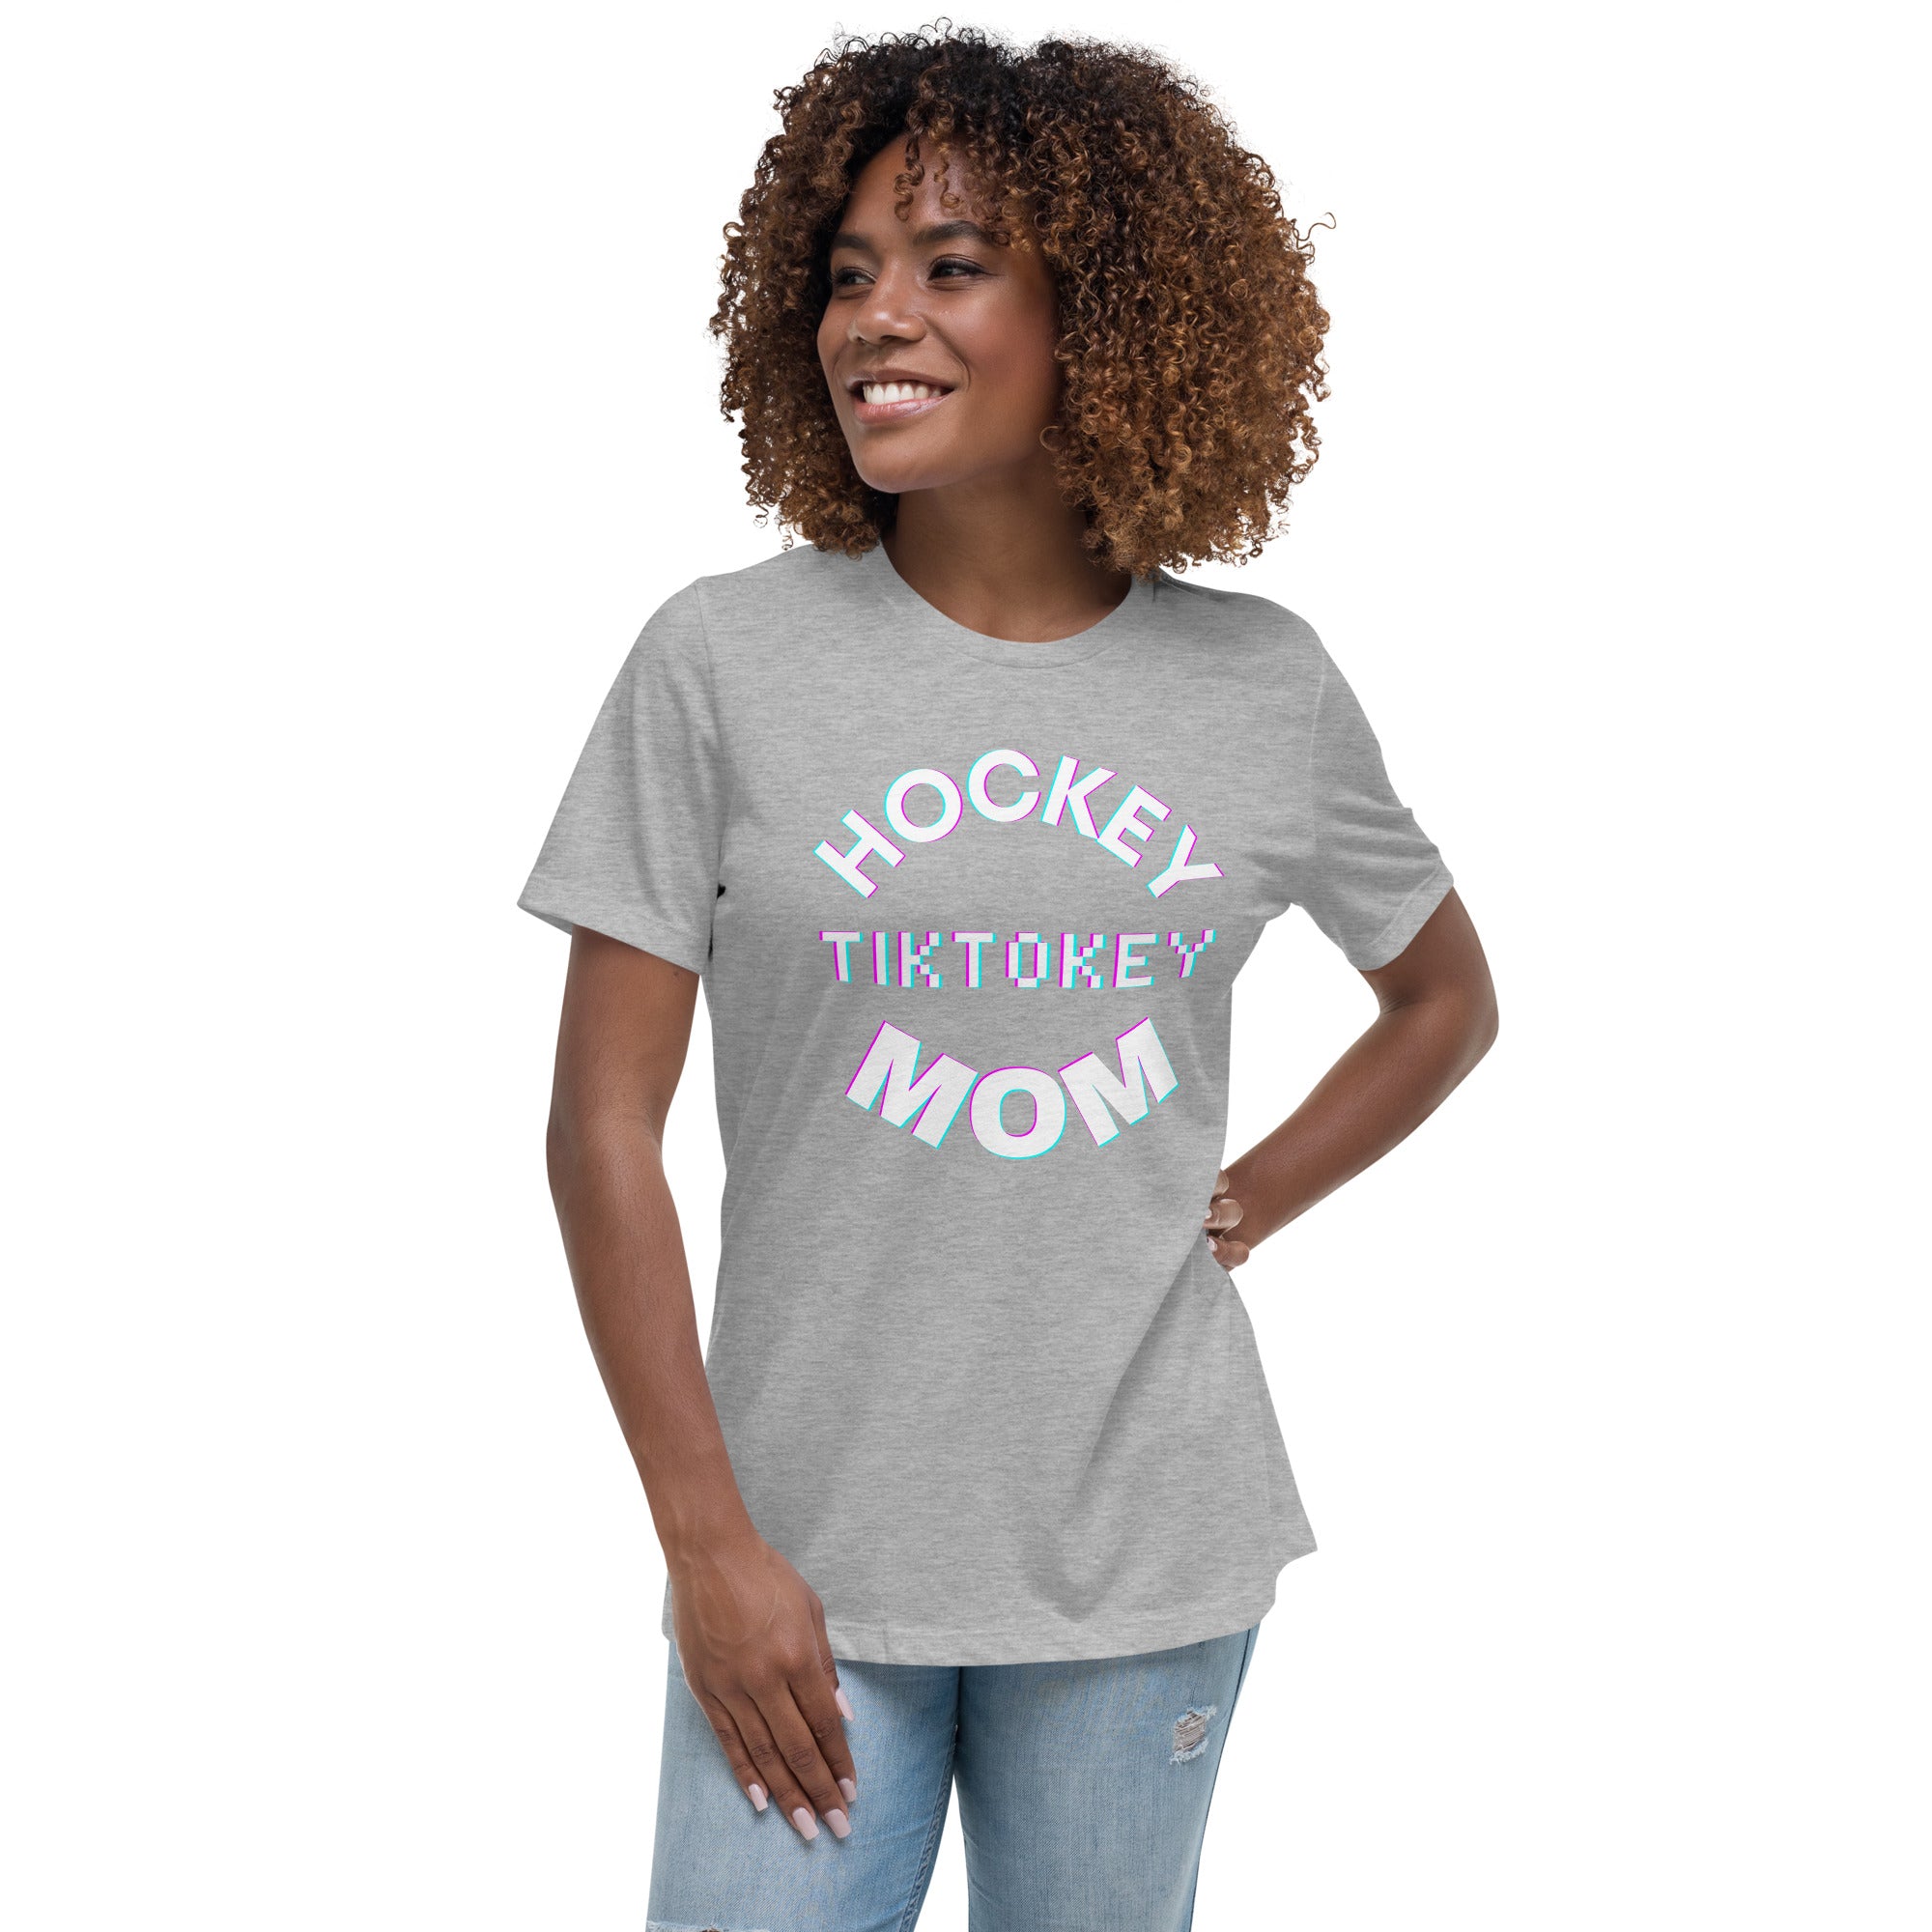 Hockey Tiktokey Women's Premium T-Shirt